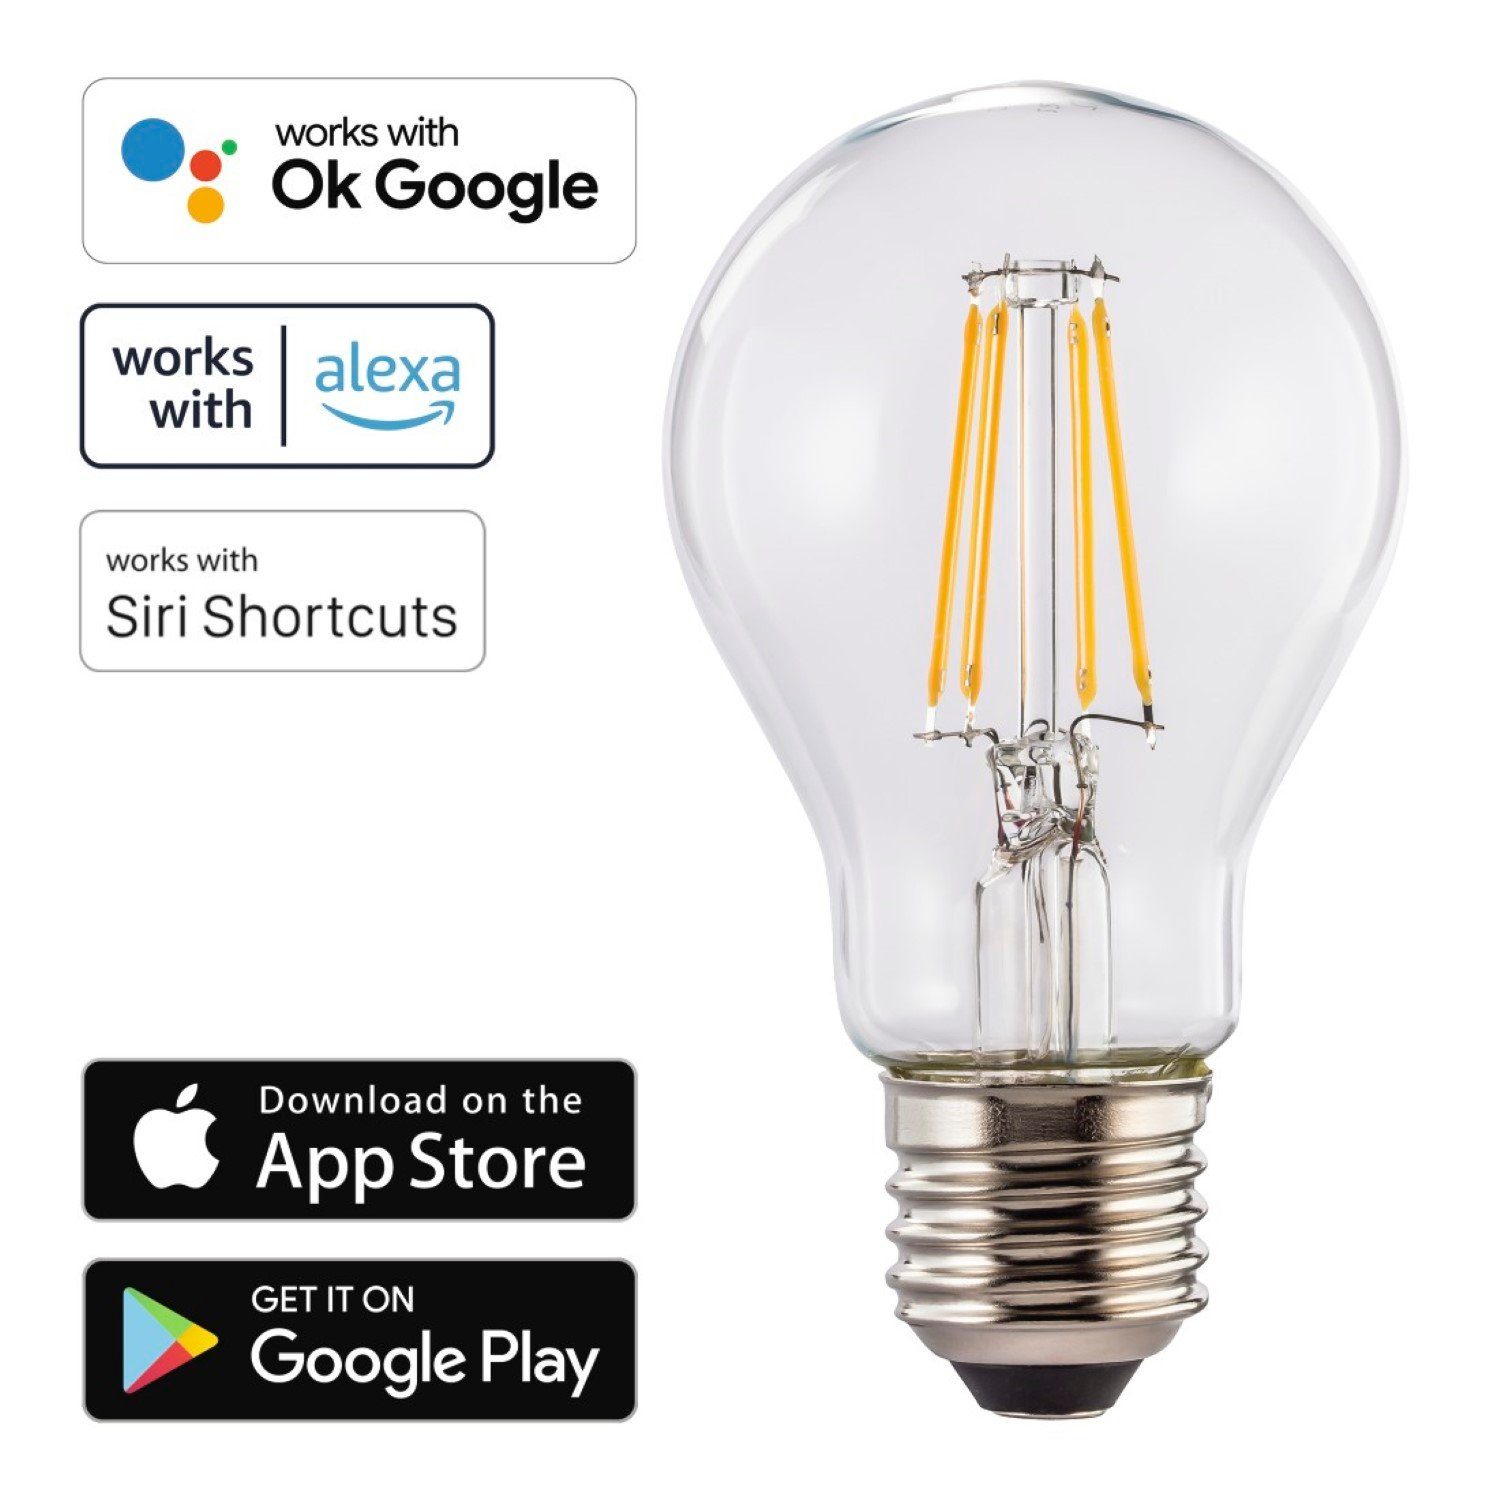 Hama Hängeleuchten WLAN LED-Lampe E27 7W 60W Retro Birne, Filament Glühbirne,  WiFi Verbindung, 7W = 60W, Smart Home, App-Steuerung auch Sprachsteuerung  passend für Amazon Alexa und Ok Google Assistent